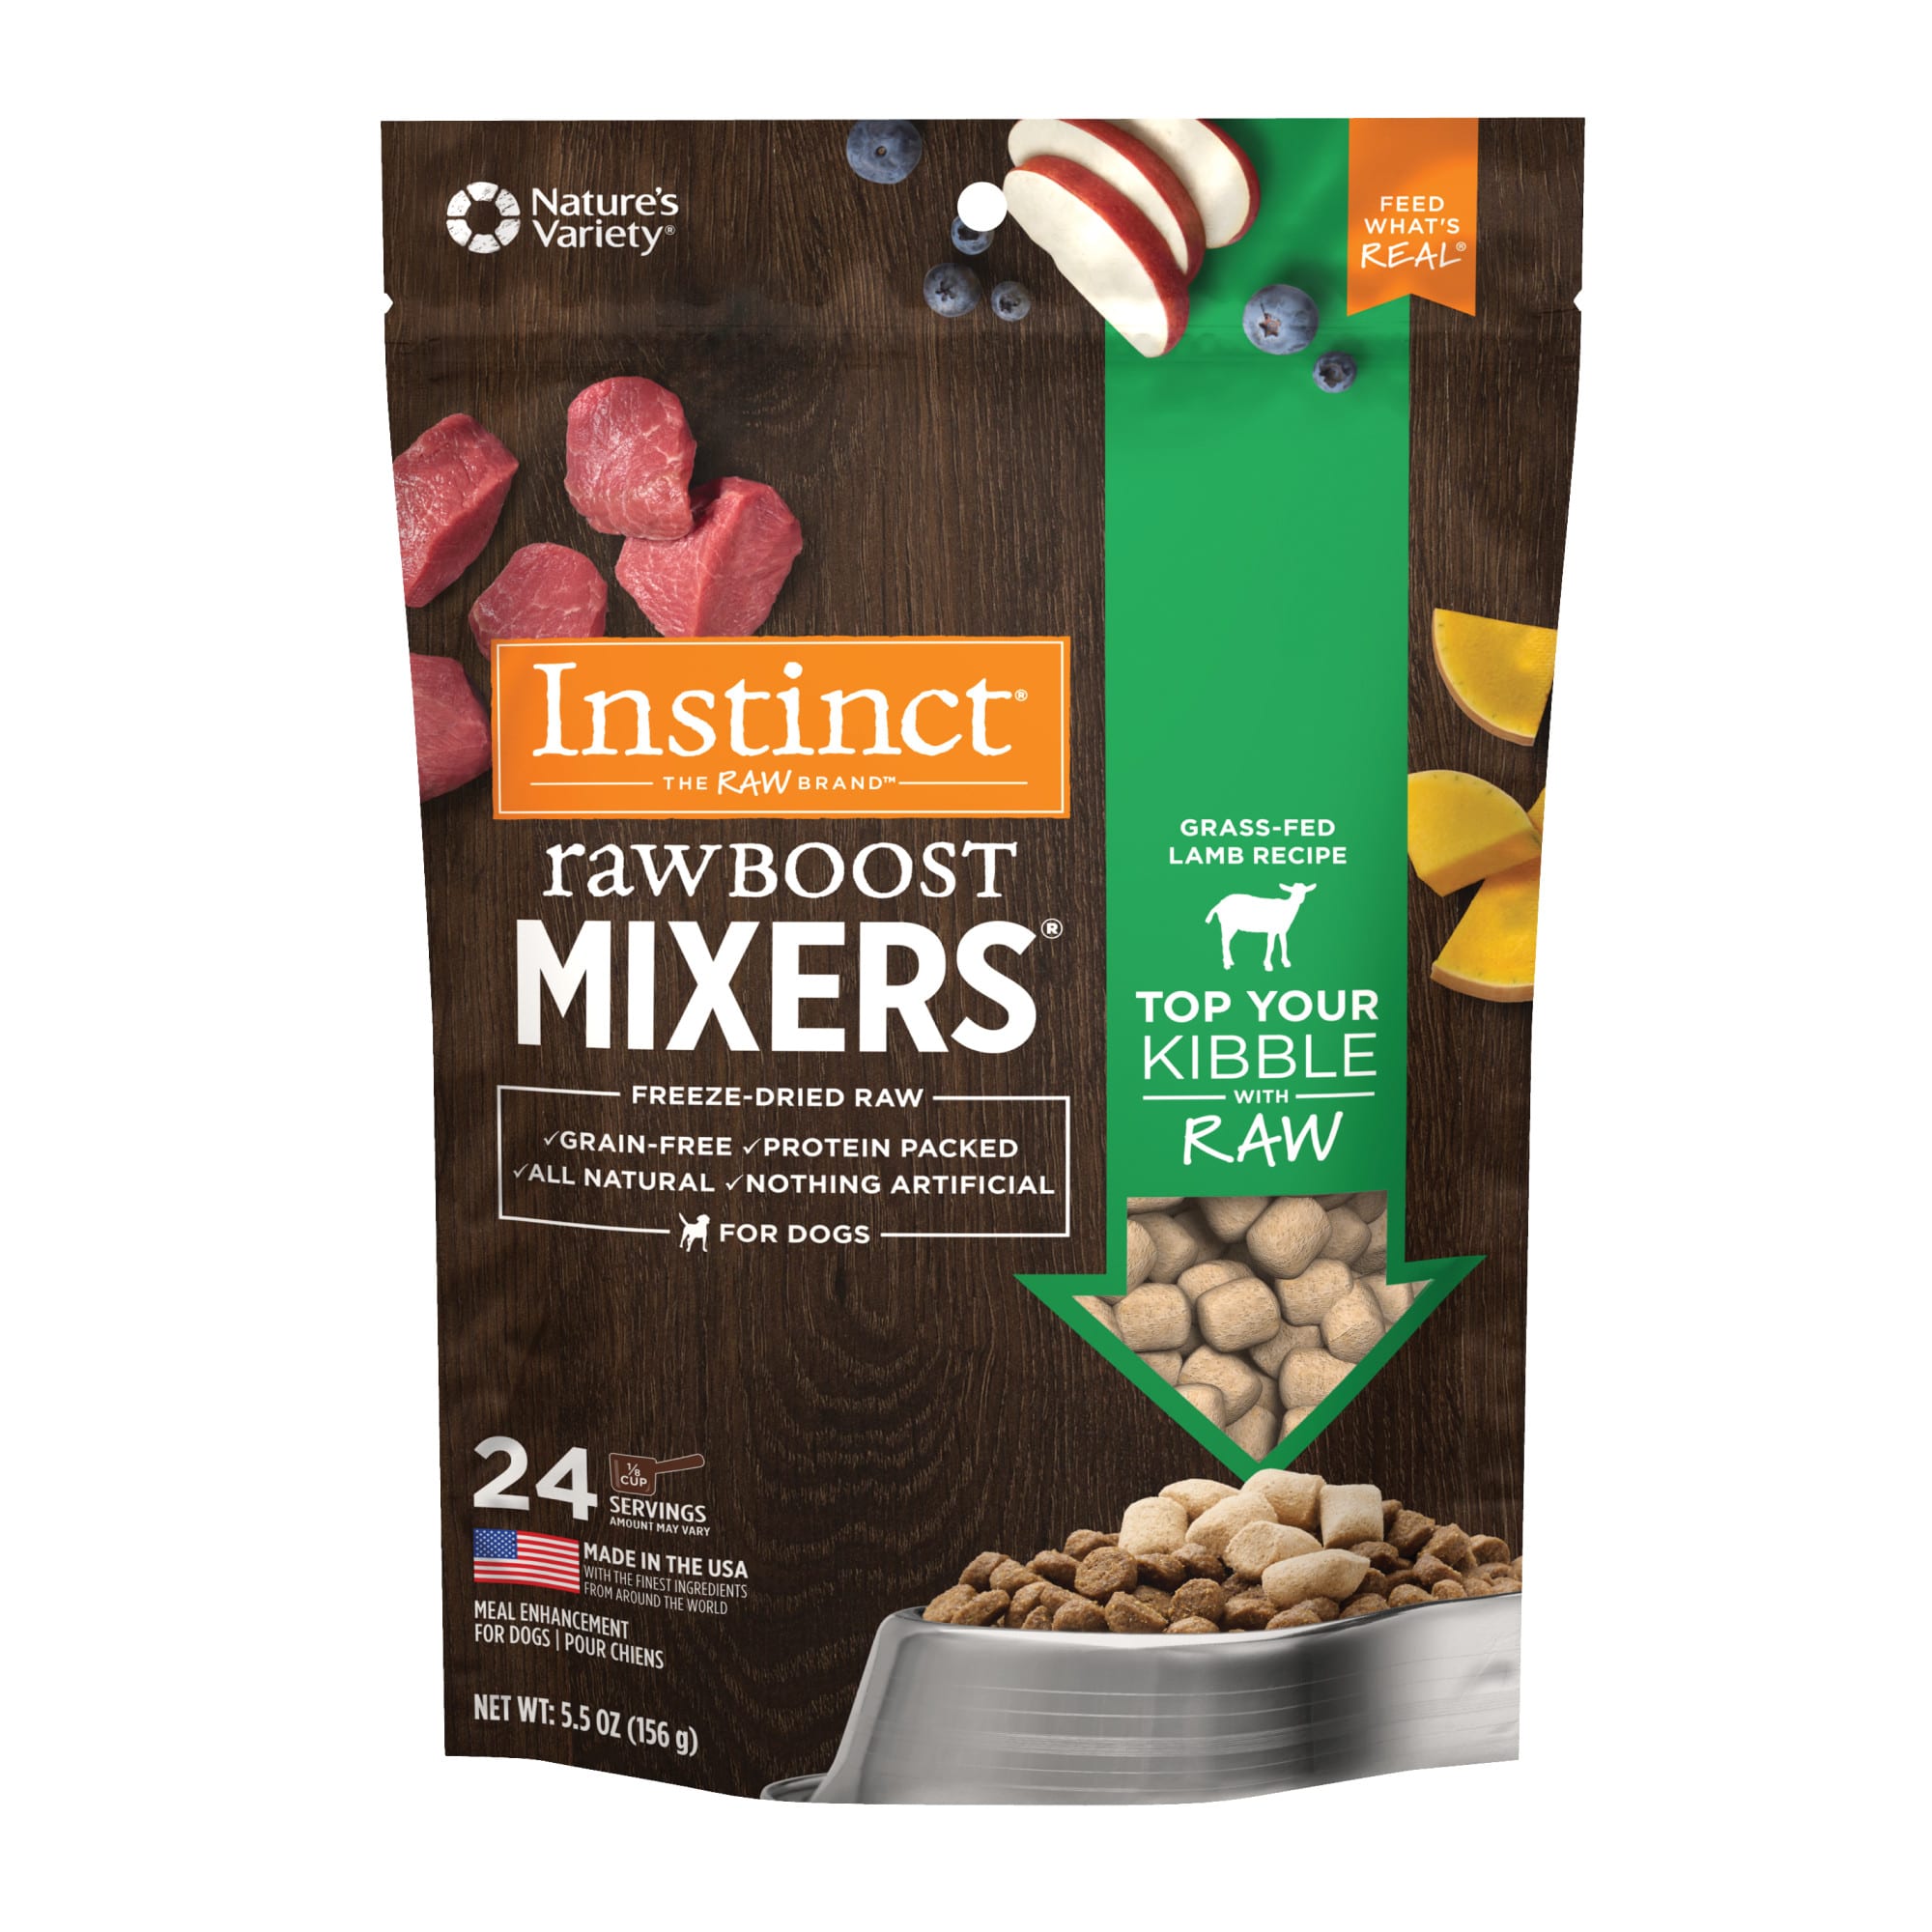 Instinct FreezeDried Raw Boost Mixers GrainFree Lamb Recipe Dog Food